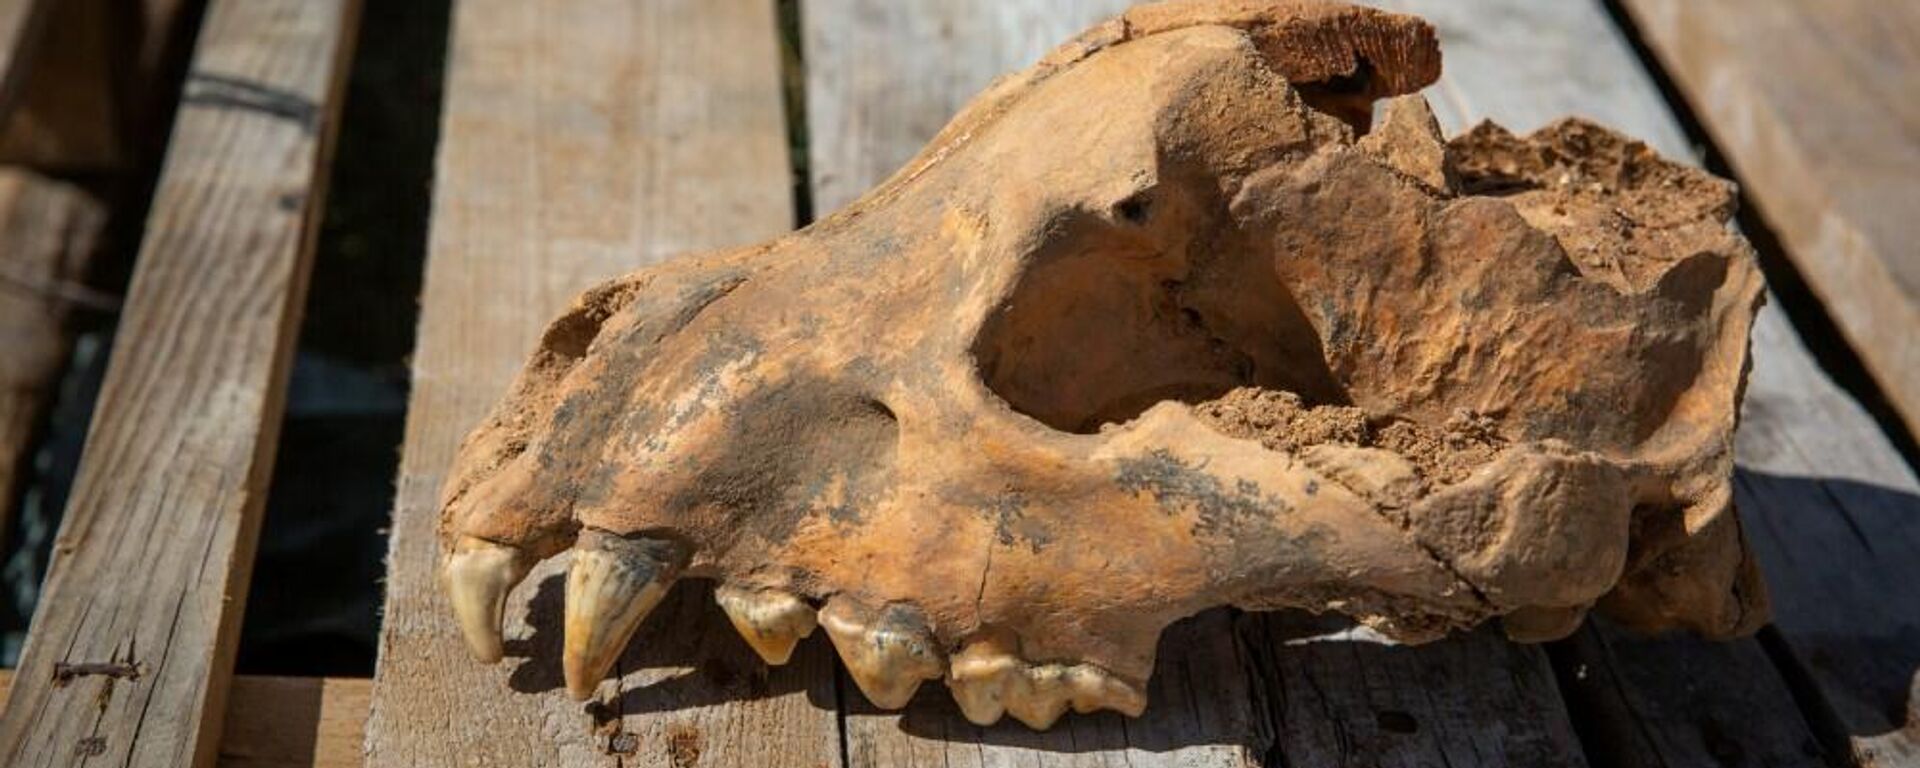 Iškastinės milžiniškos hienos Pachikrokuta kaukolė, rasta Tavridos oloje Kryme - Sputnik Lietuva, 1920, 11.09.2021